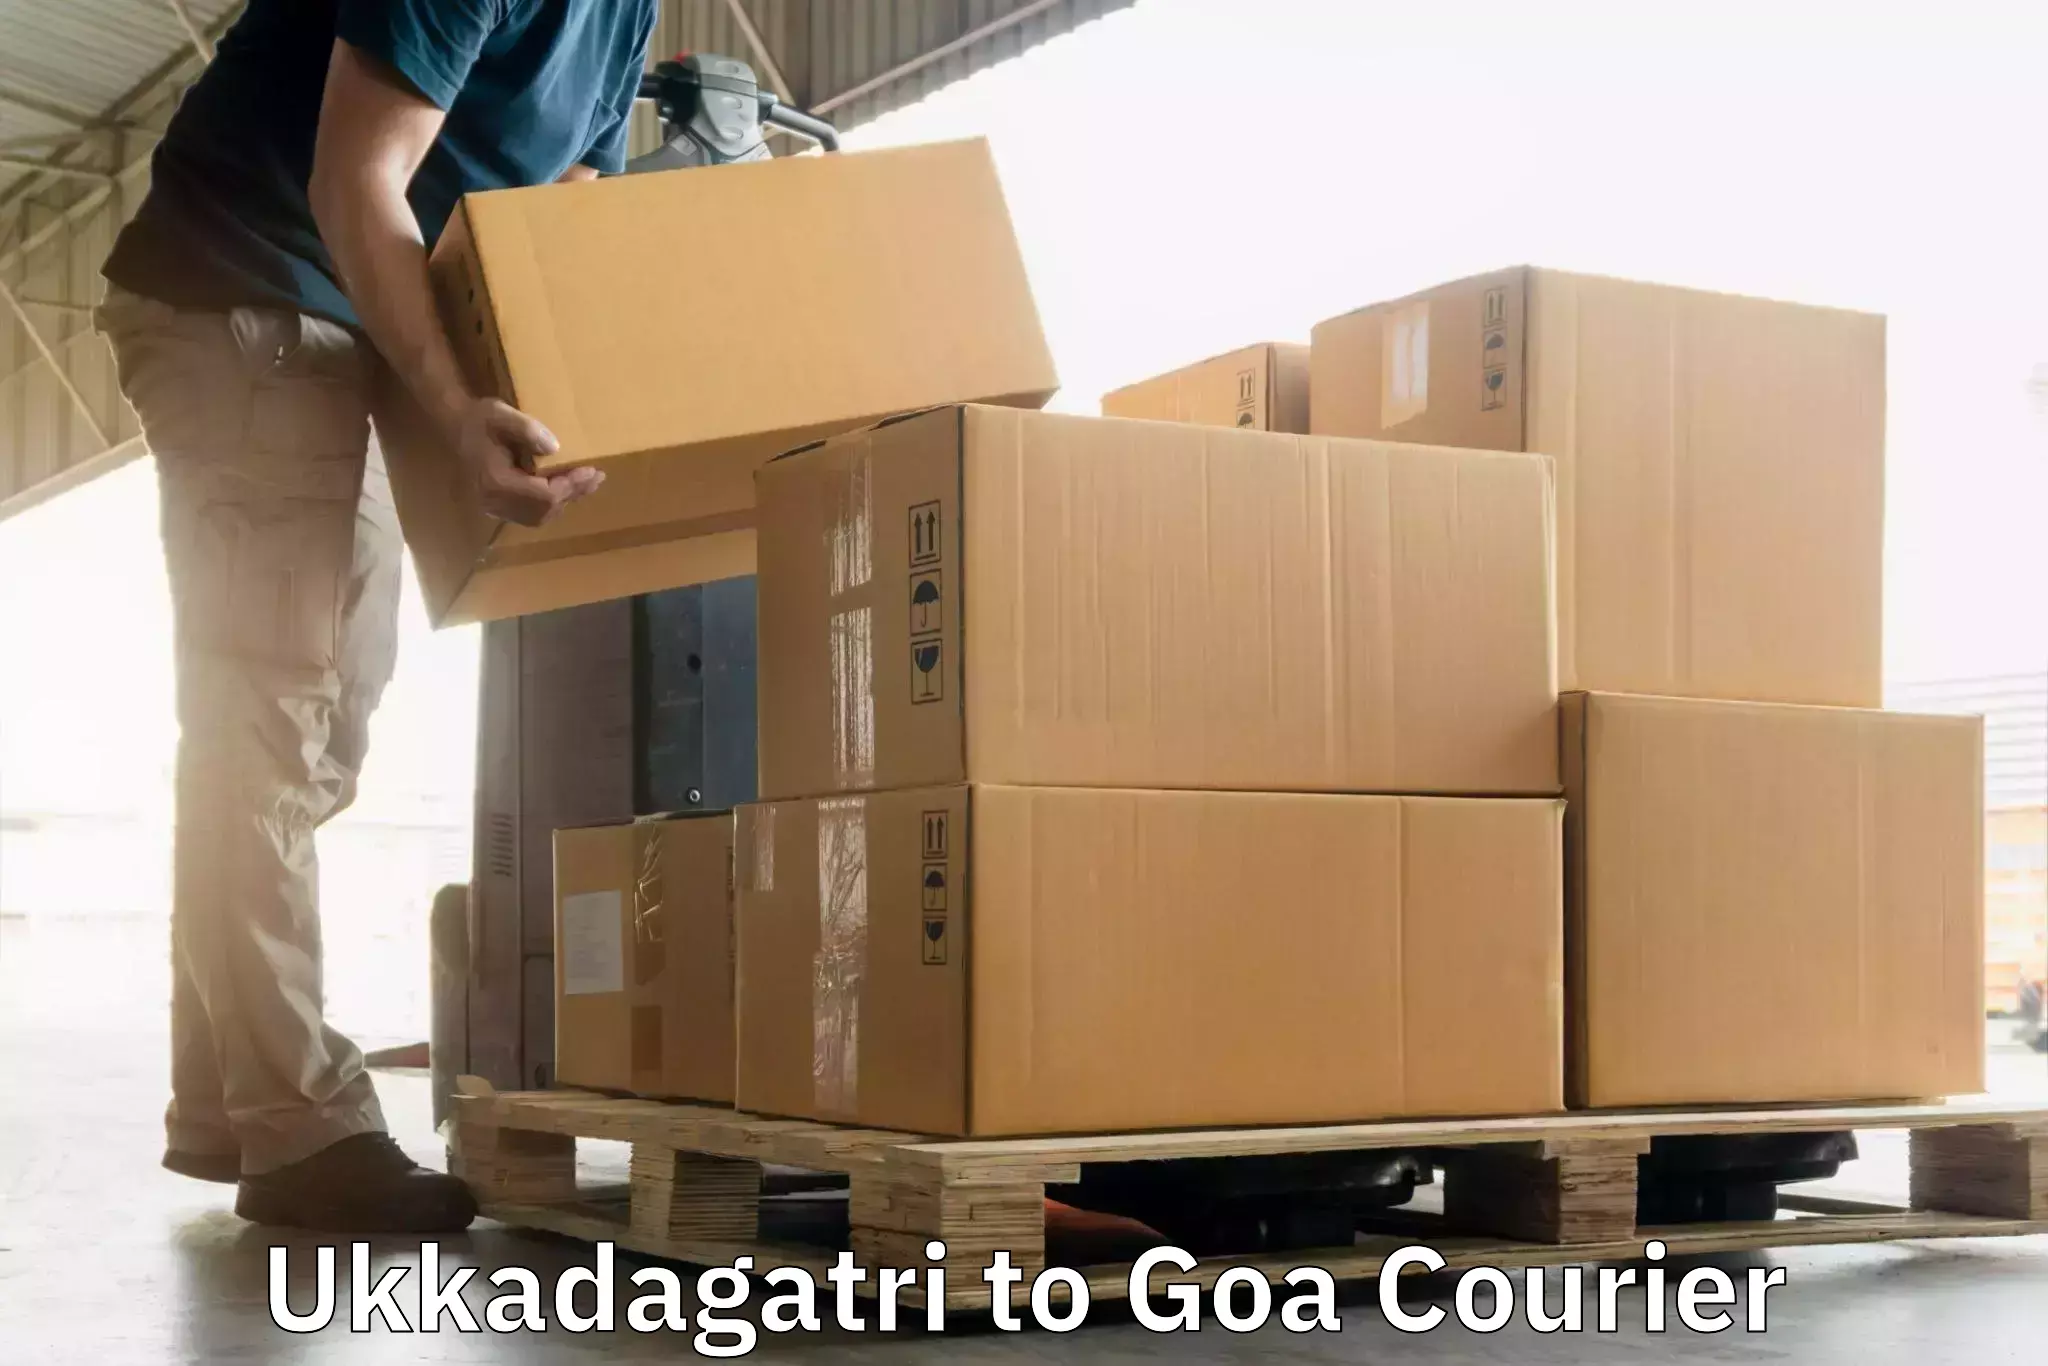 Efficient parcel service Ukkadagatri to Goa